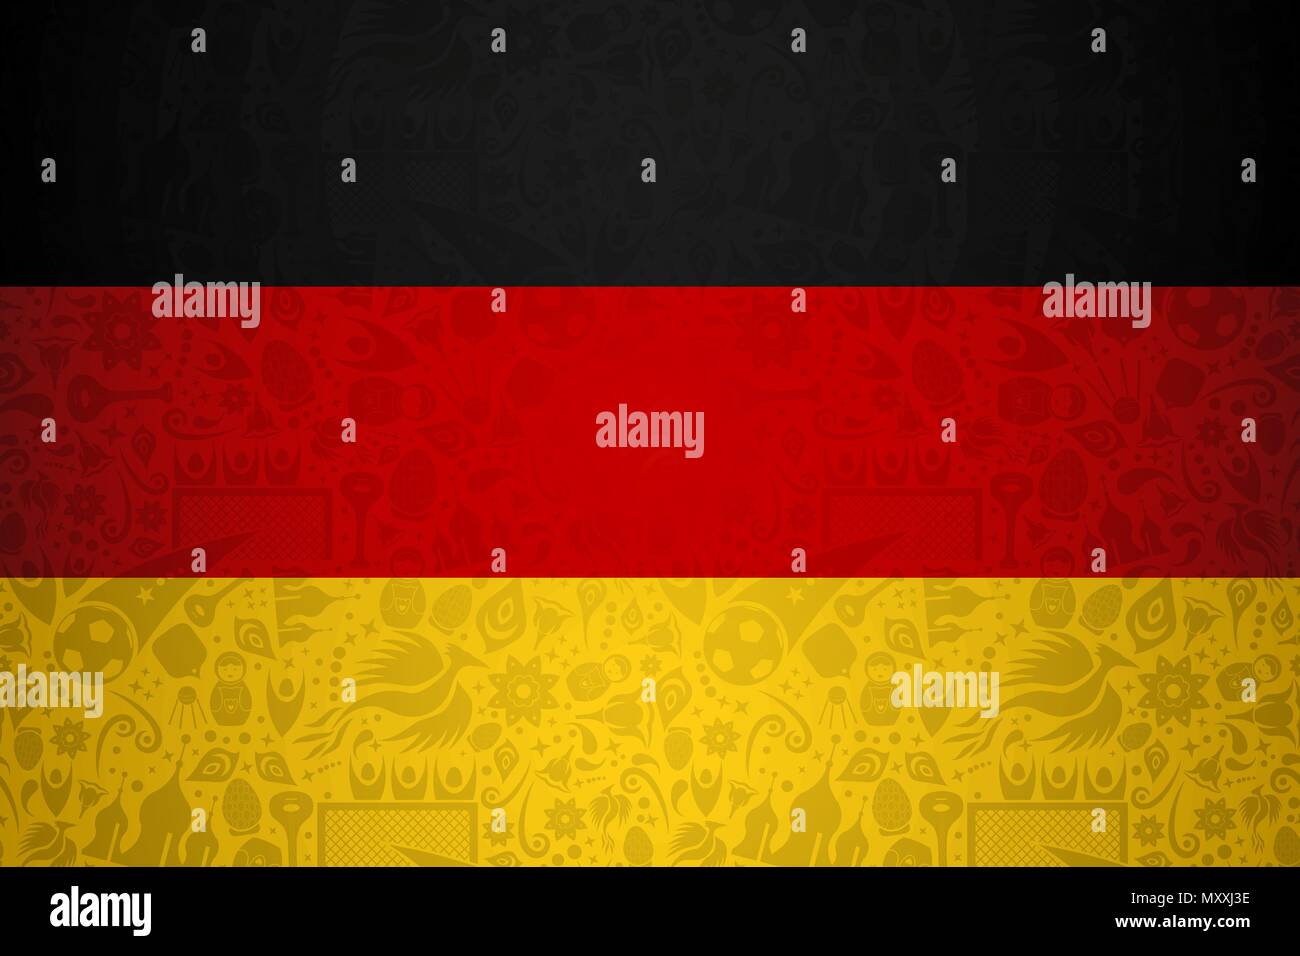 Deutschland Fahne Symbol Hintergrund für besondere Fußball-Sport Ereignis. Mit russischen Stil Ikonen. EPS 10 Vektor. Stock Vektor